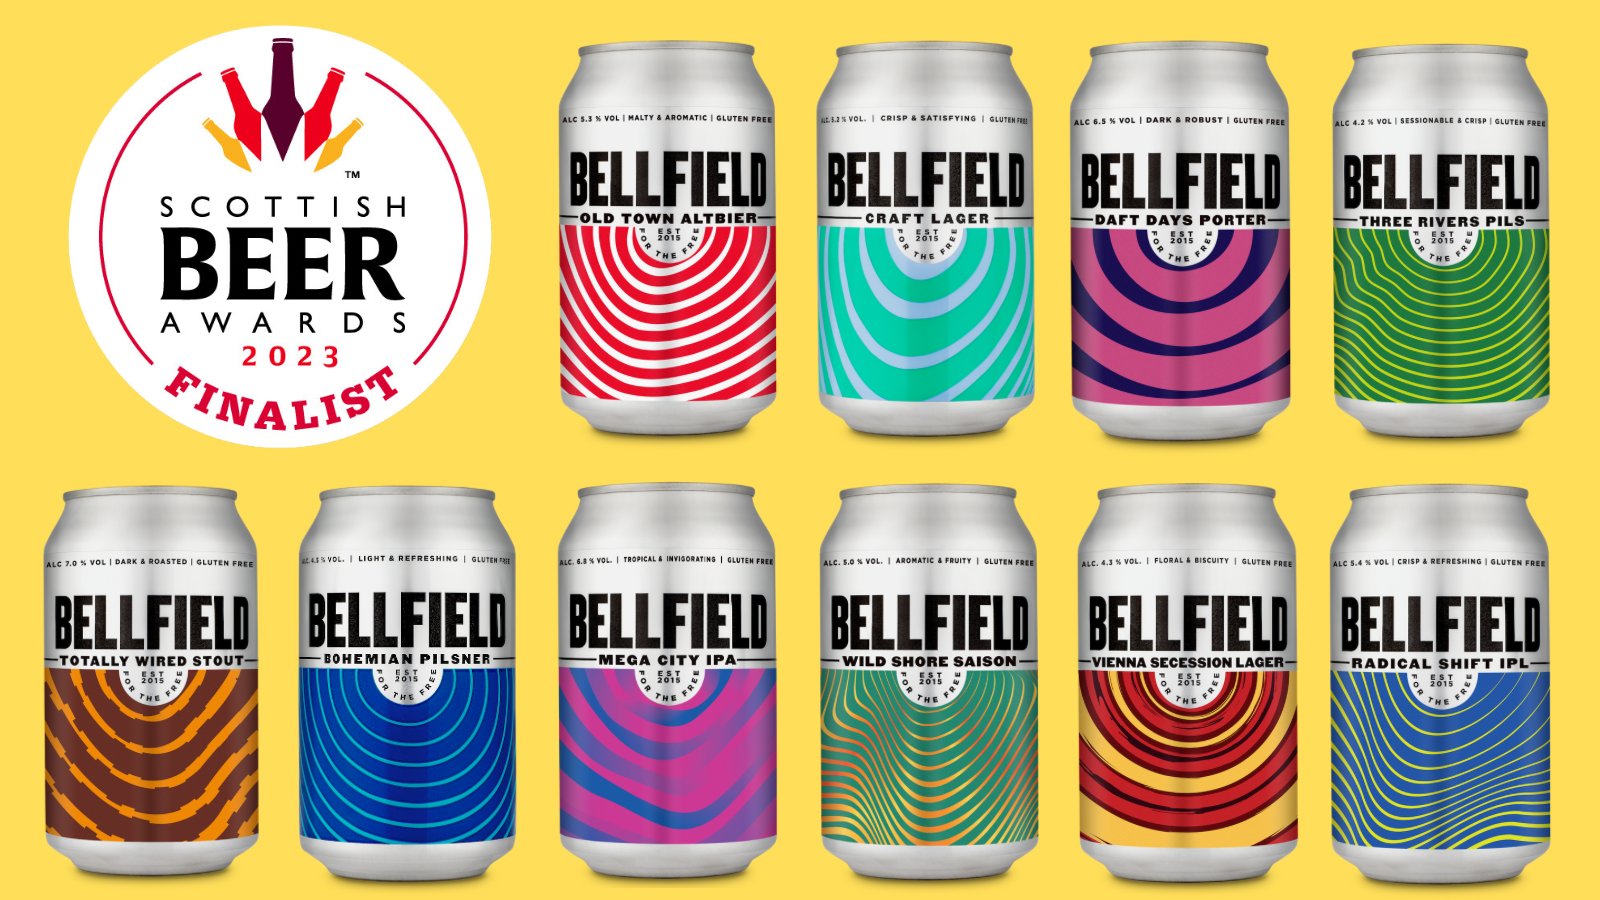 Scottish Beer Awards 2023: Bellfield Finalists in 14 Categories!